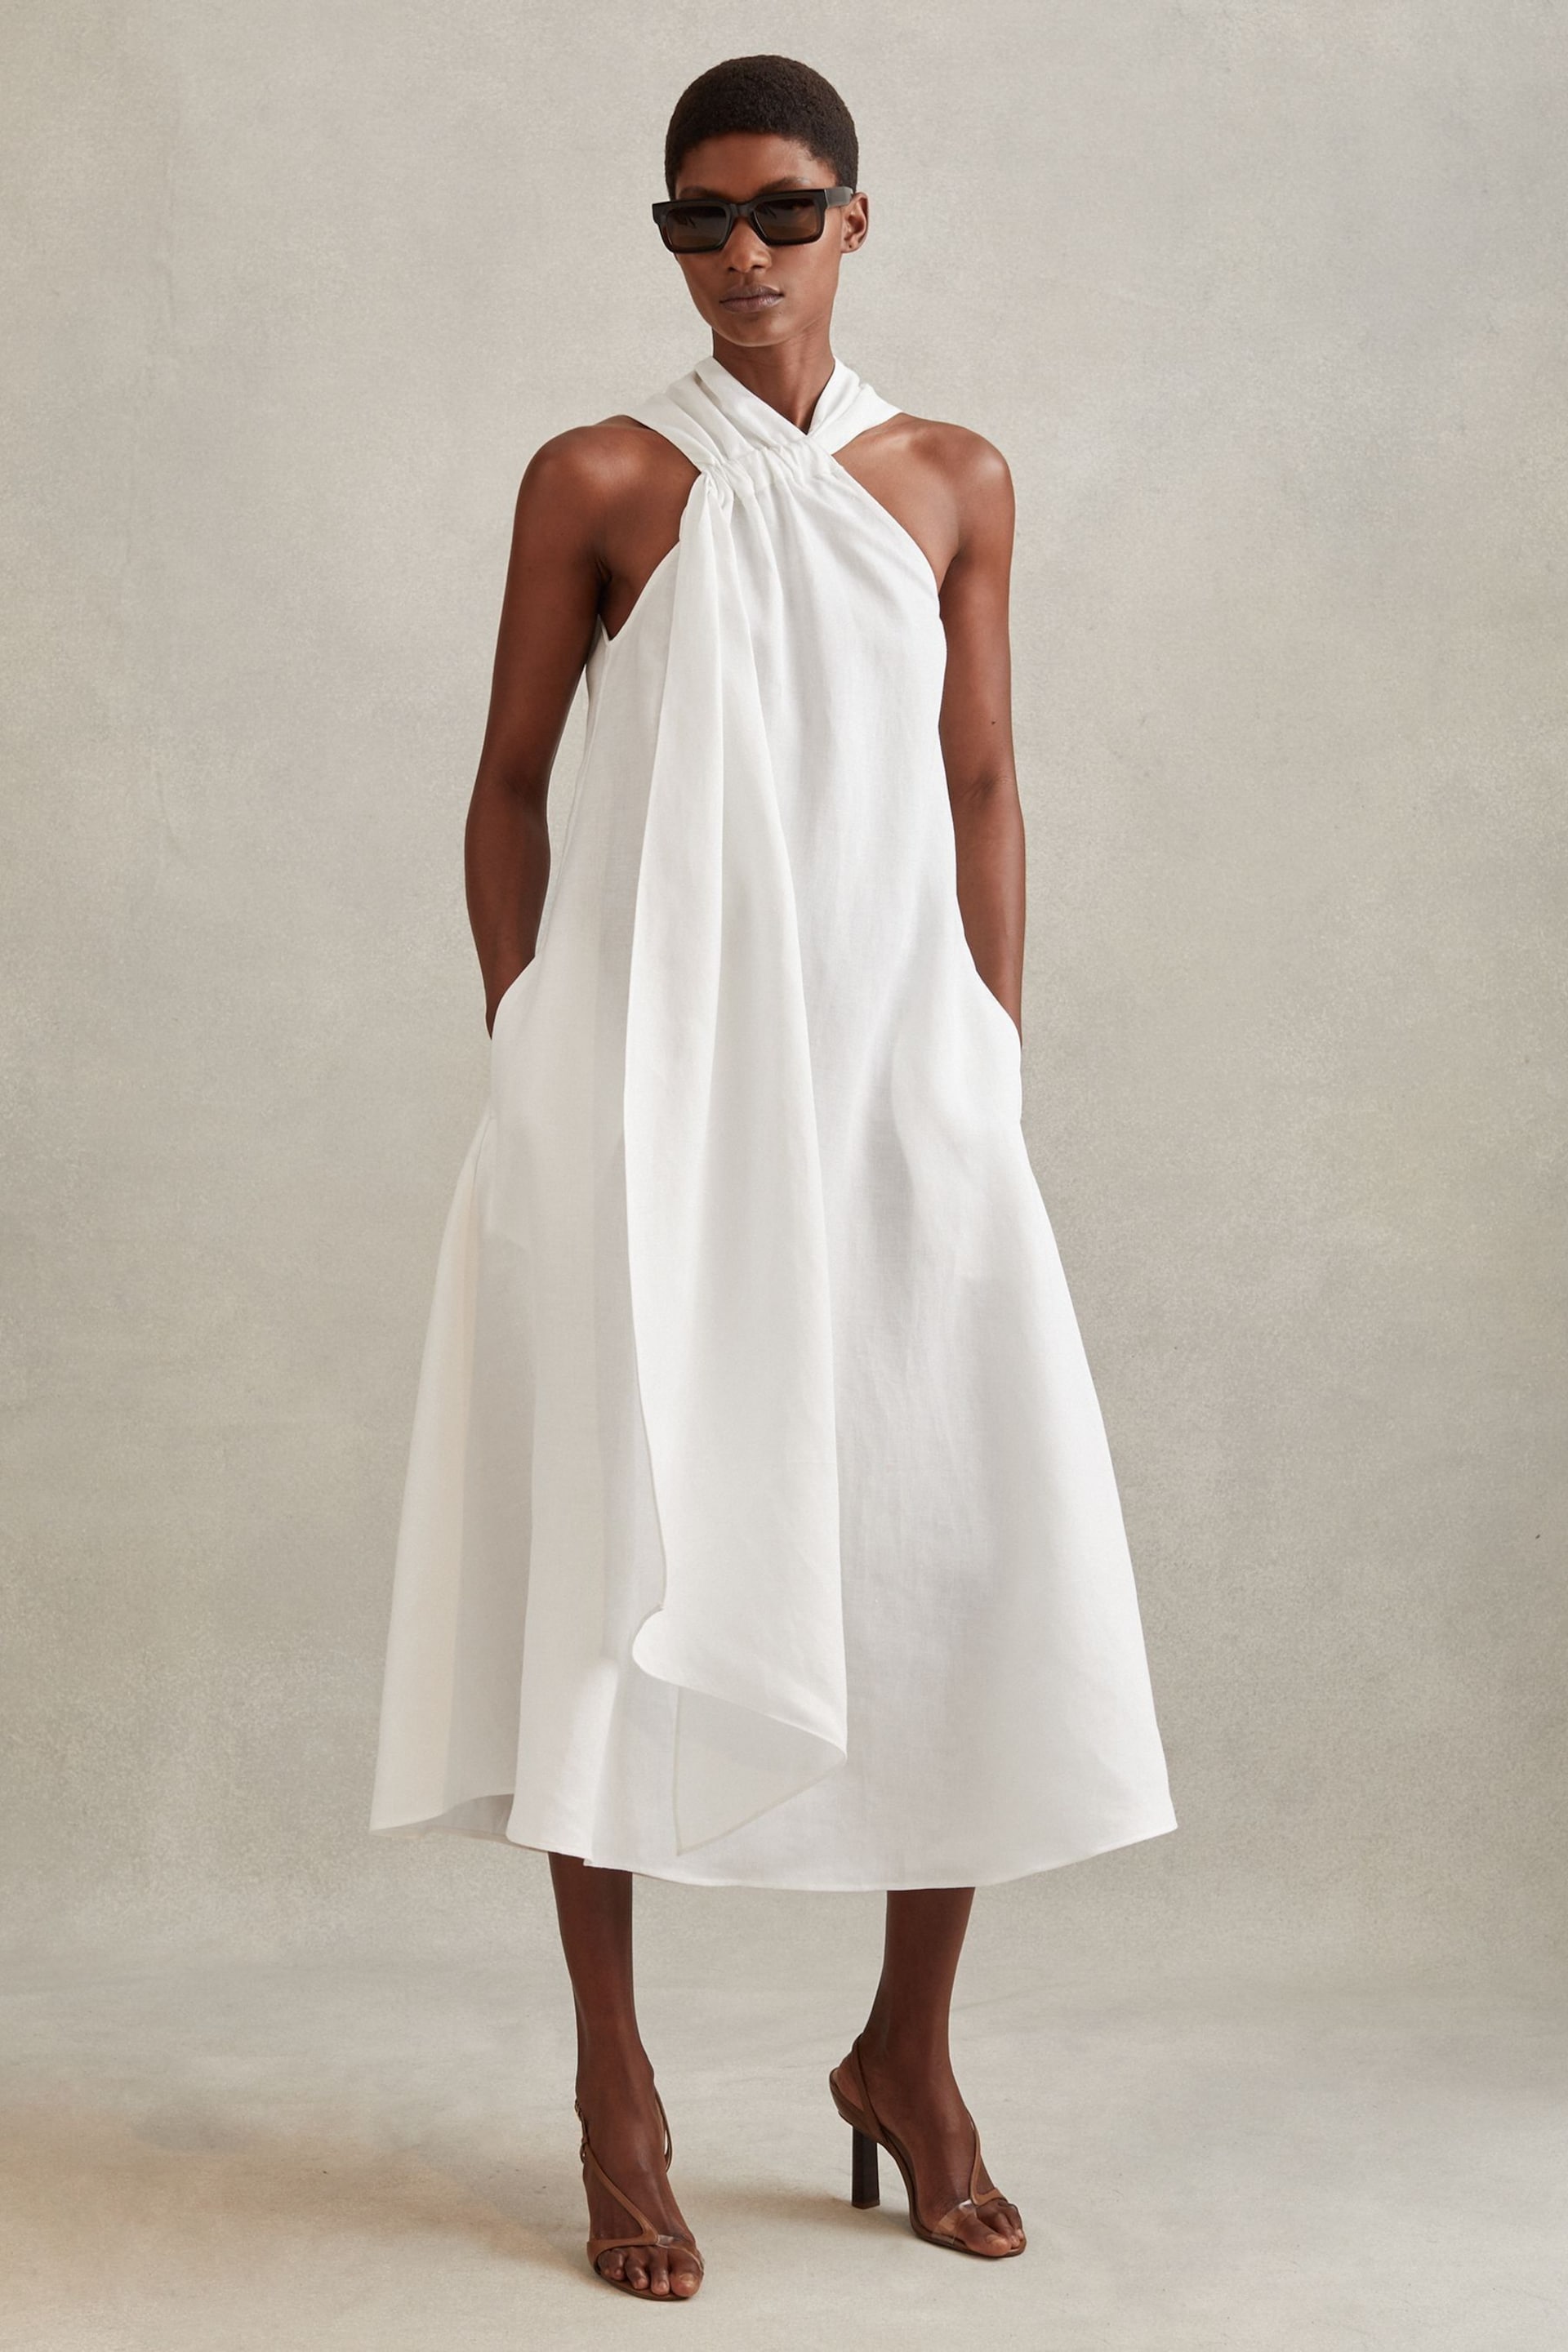 Reiss White Cosette Linen Blend Drape Midi Dress - Image 1 of 5